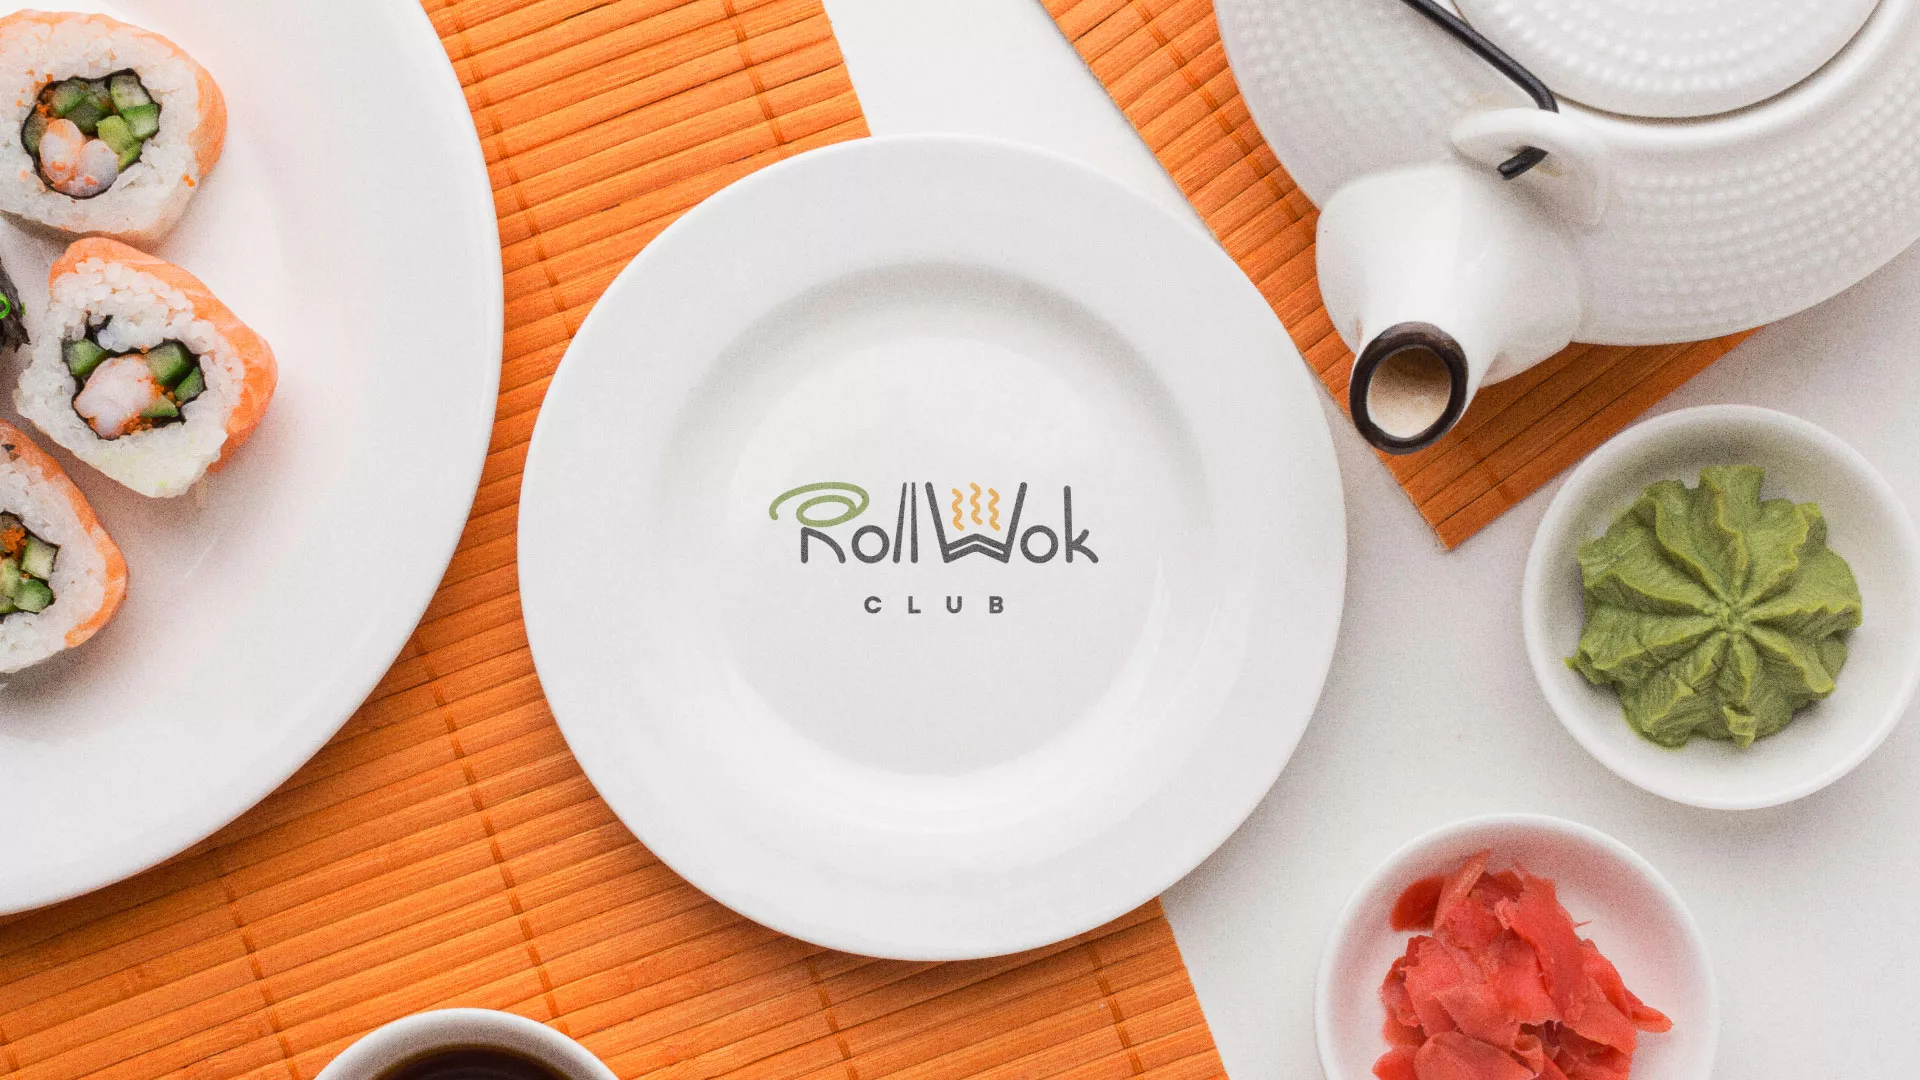 Разработка логотипа и фирменного стиля суши-бара «Roll Wok Club» в Новороссийске